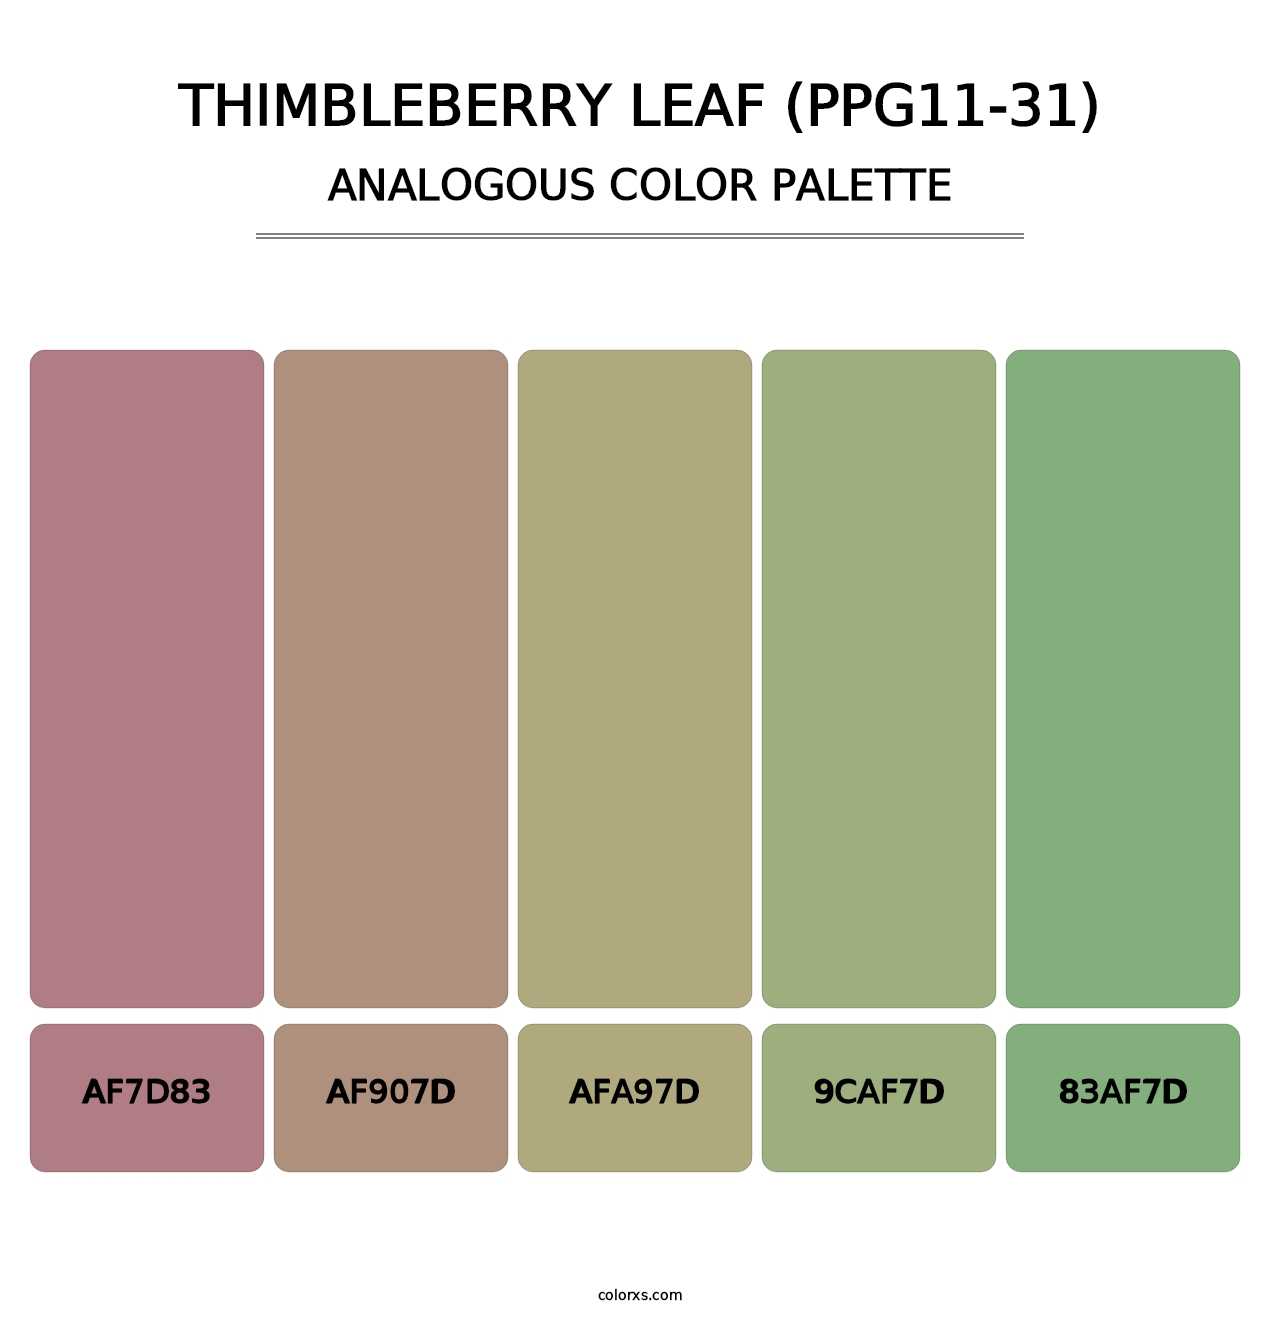 Thimbleberry Leaf (PPG11-31) - Analogous Color Palette